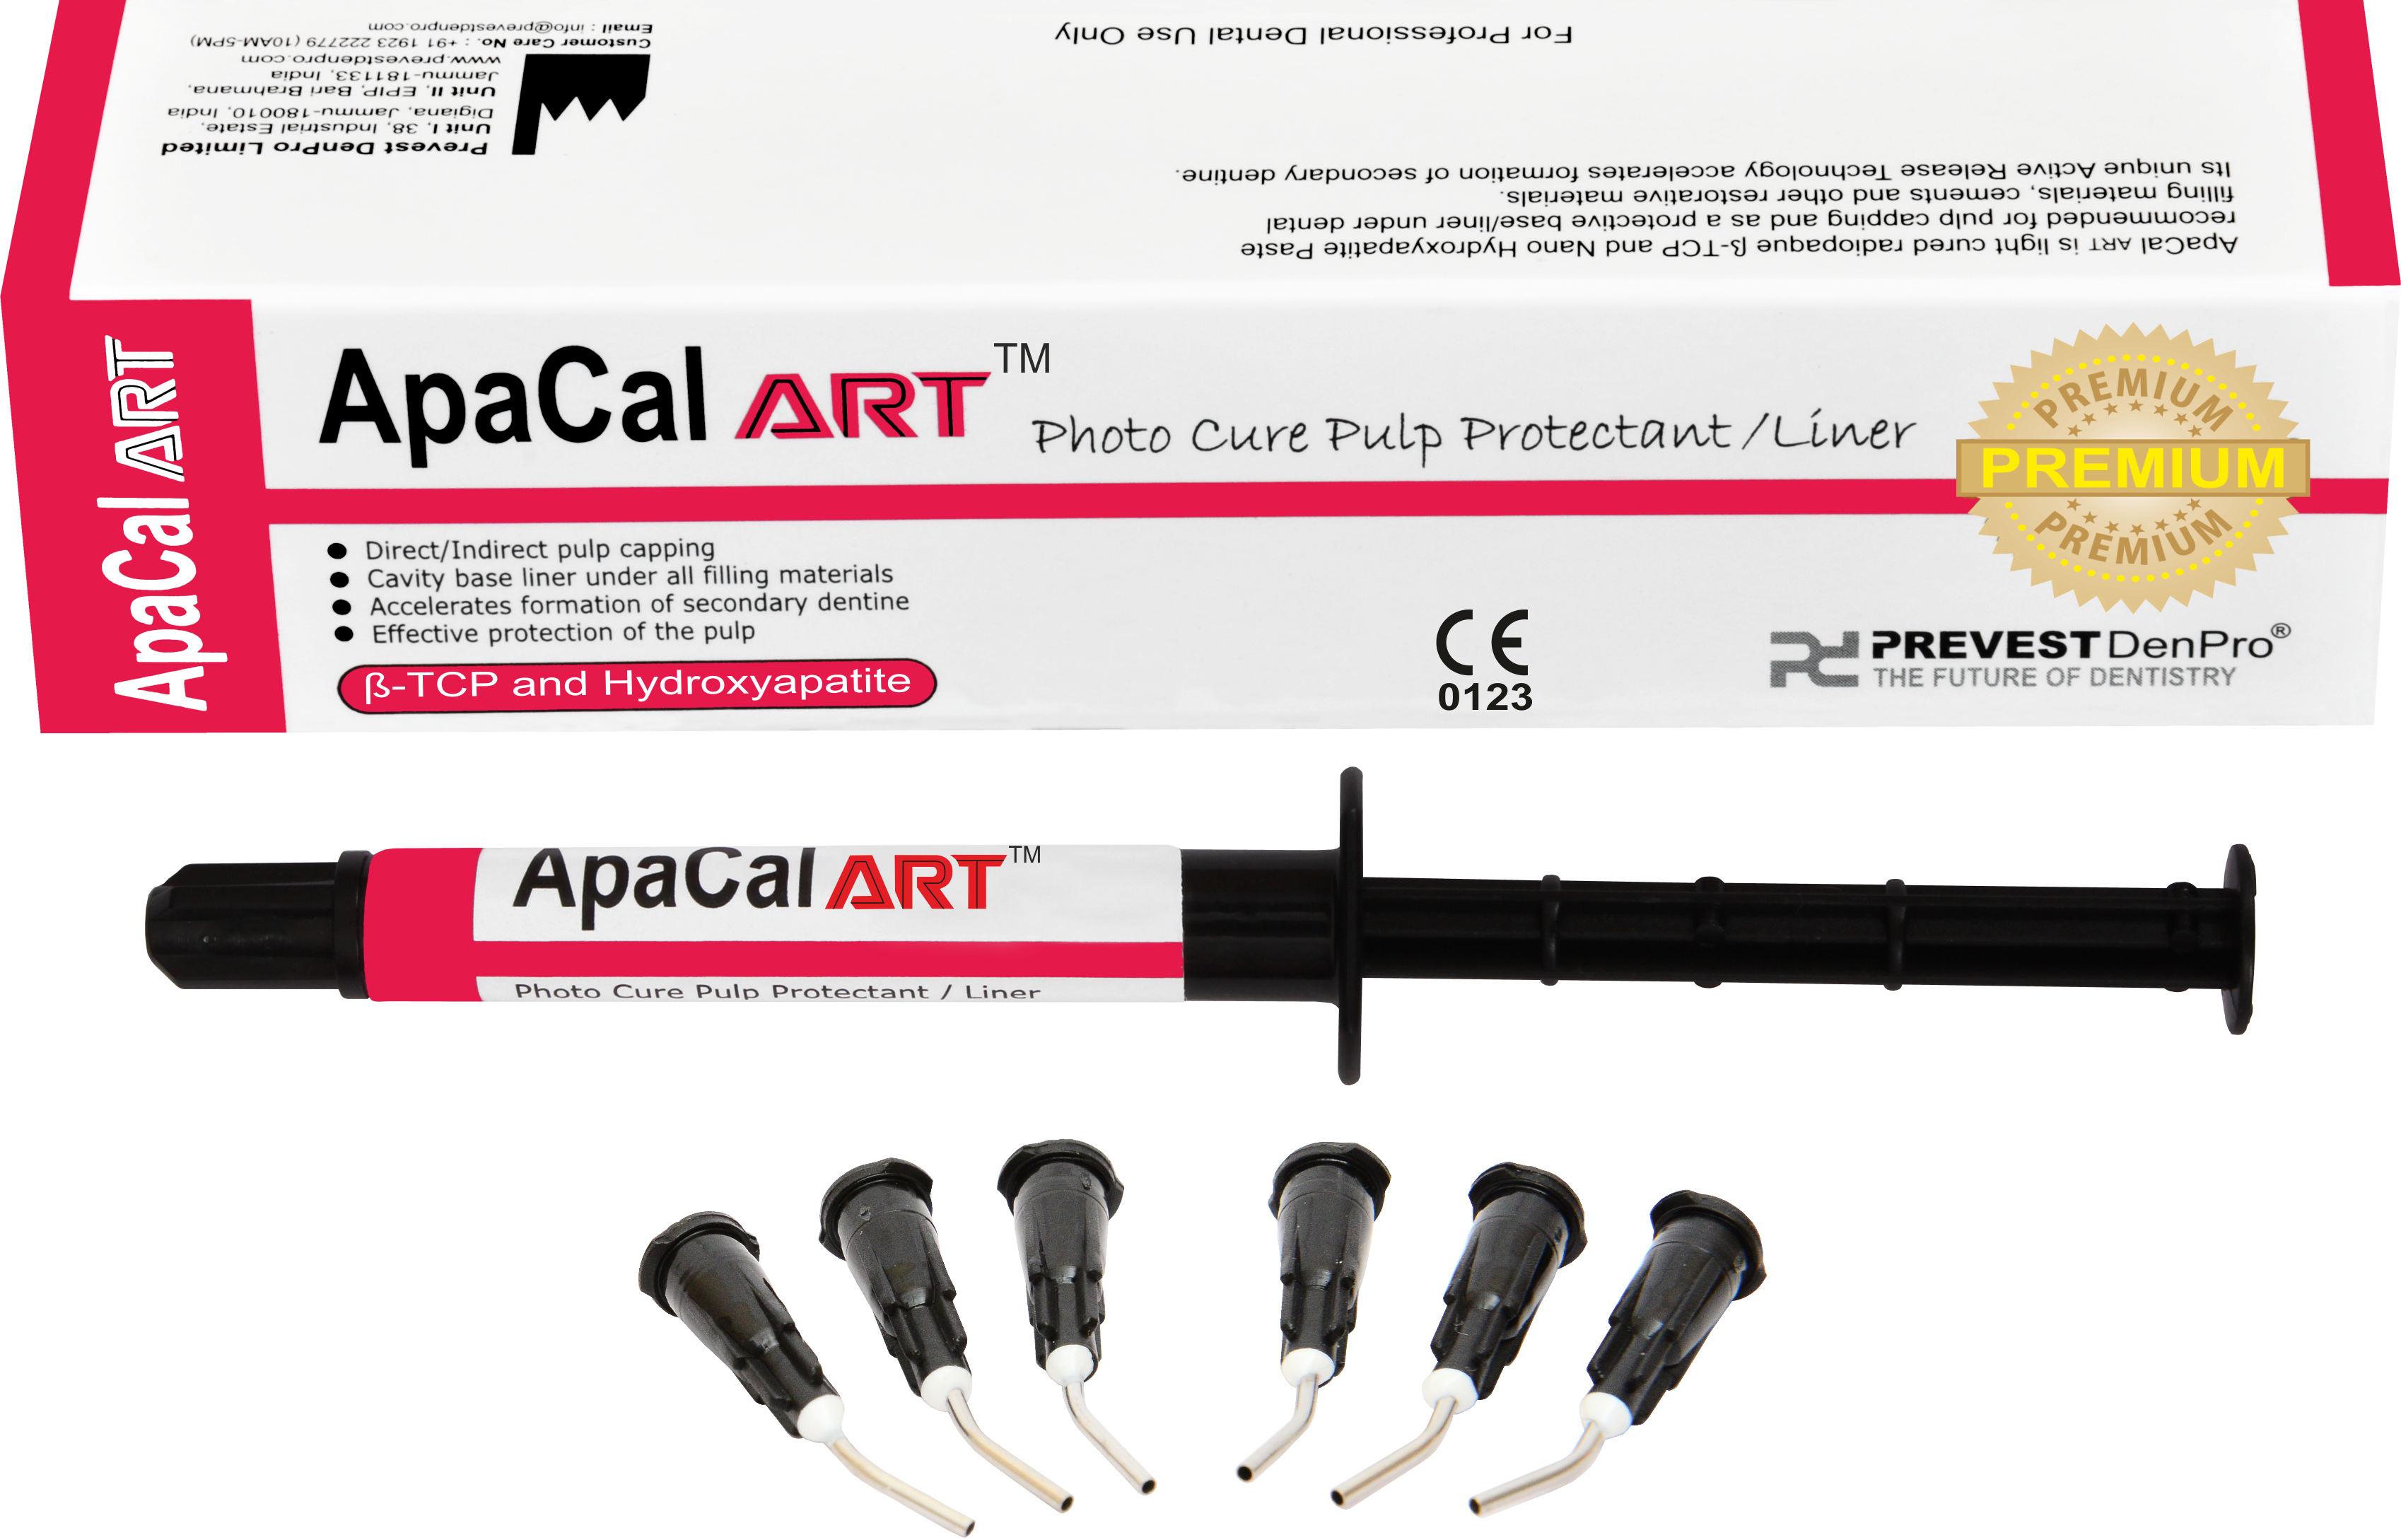 ApaCal ART